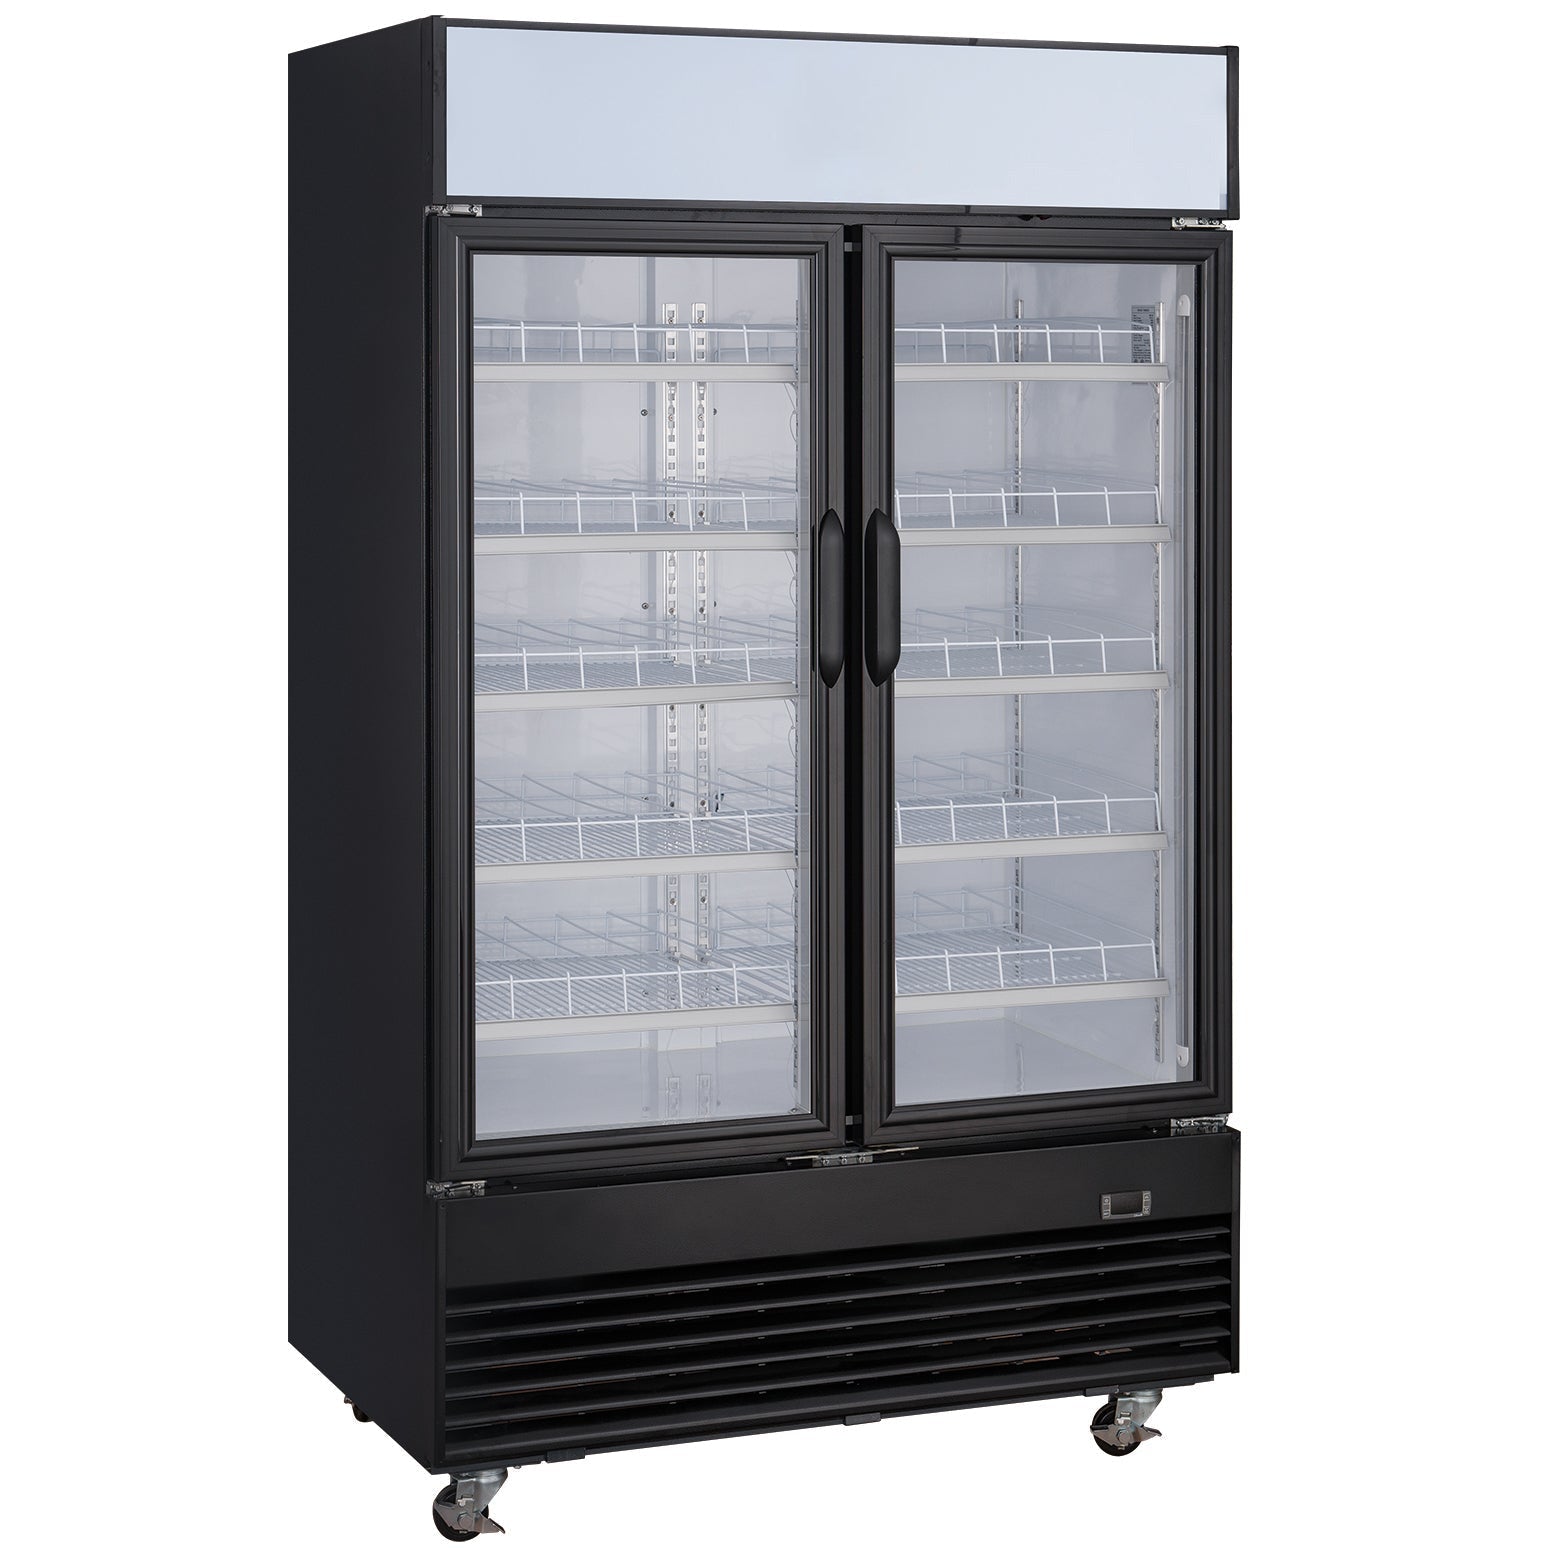 48" 2-Door Merchandiser Refrigerator, EKS SC-1076FDX